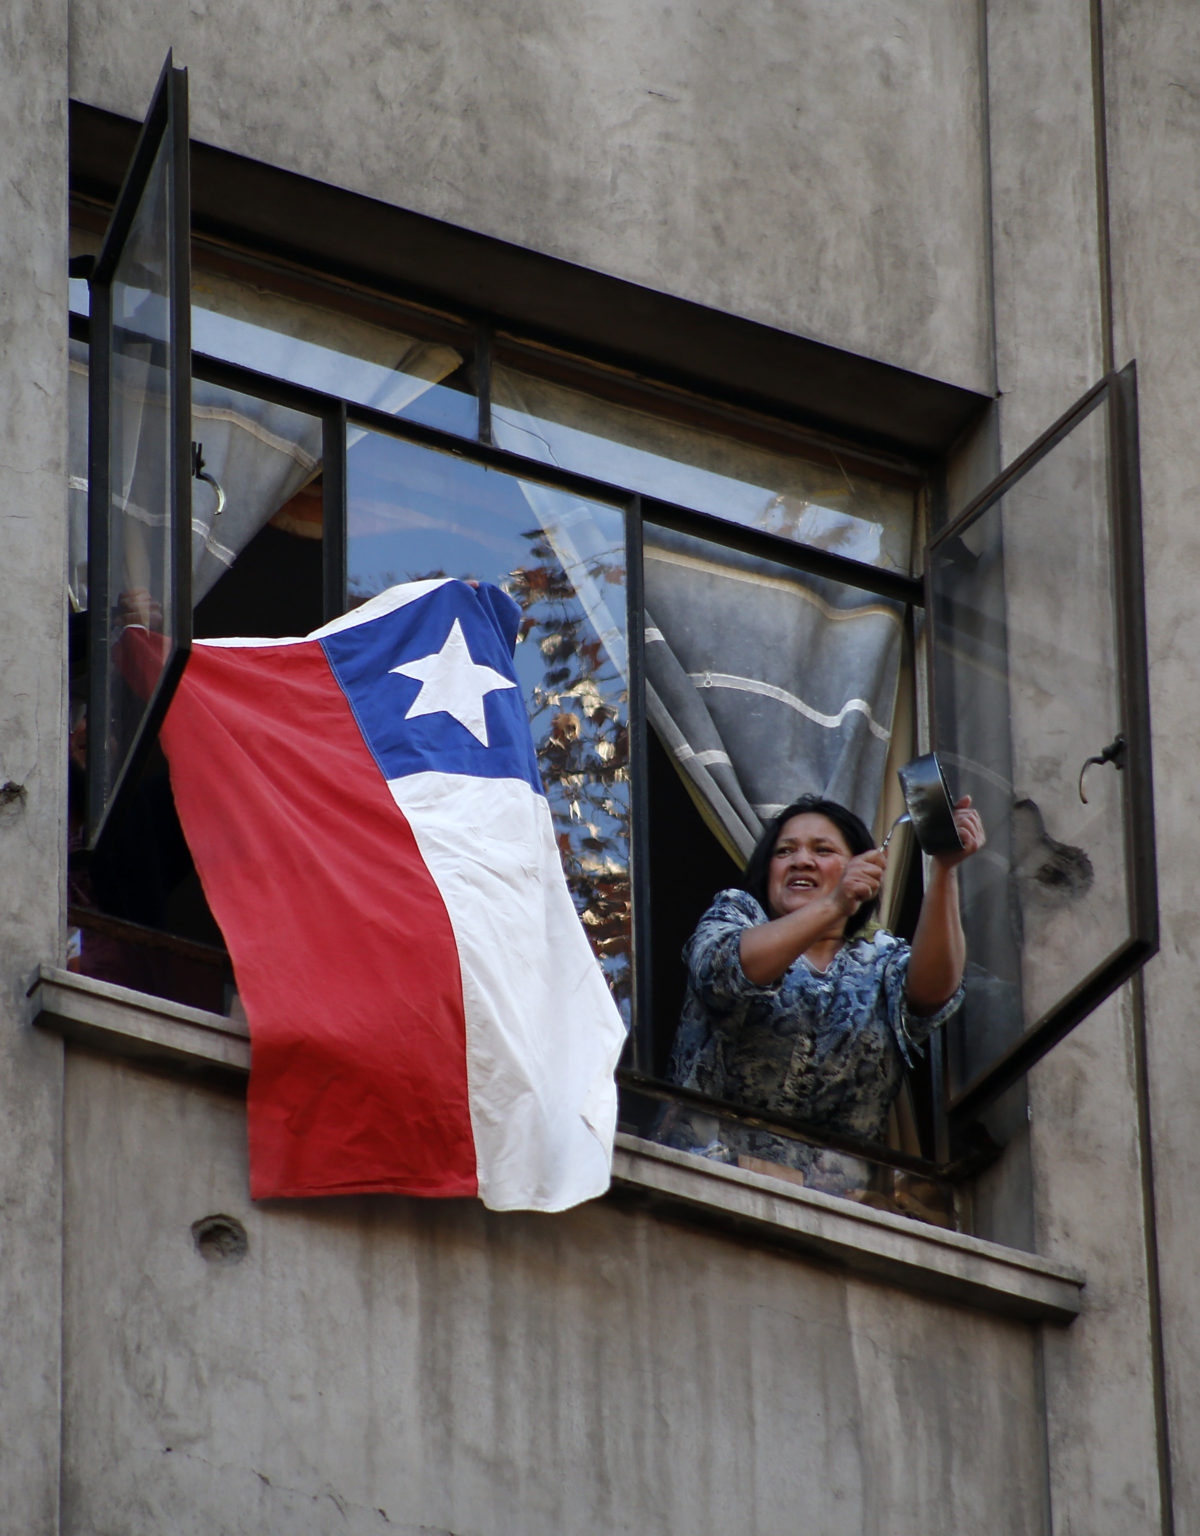 Chile 95 – AFP’s 36: La marraqueta será más crujiente mañana